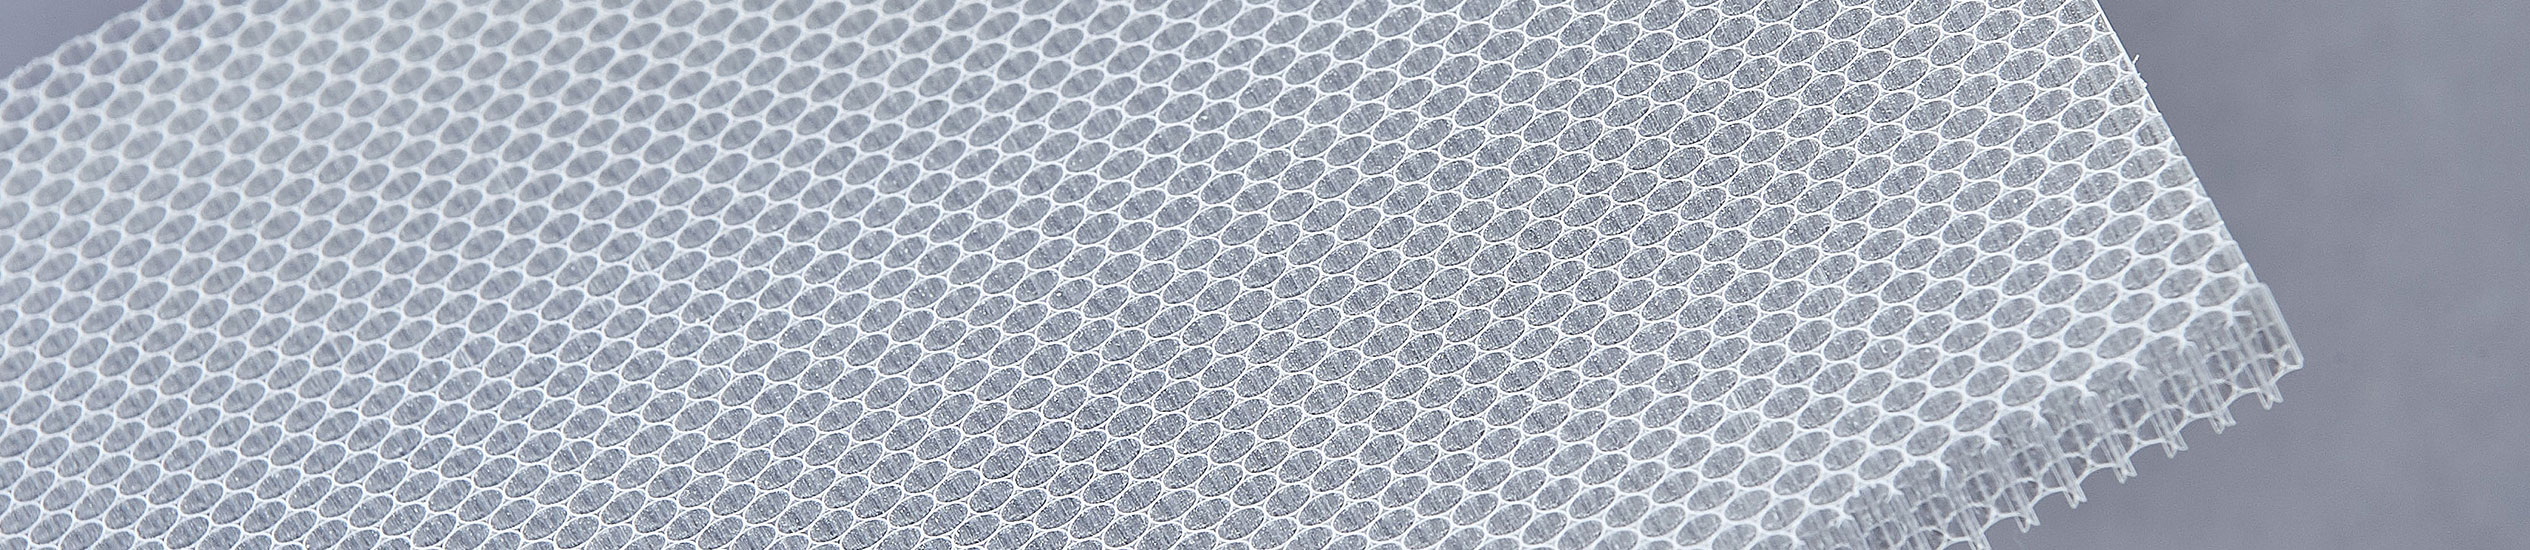 CEL ofrece una amplia gama de materiales de núcleo: panal de aluminio, termoplásticos, papel de aramida y espumas.